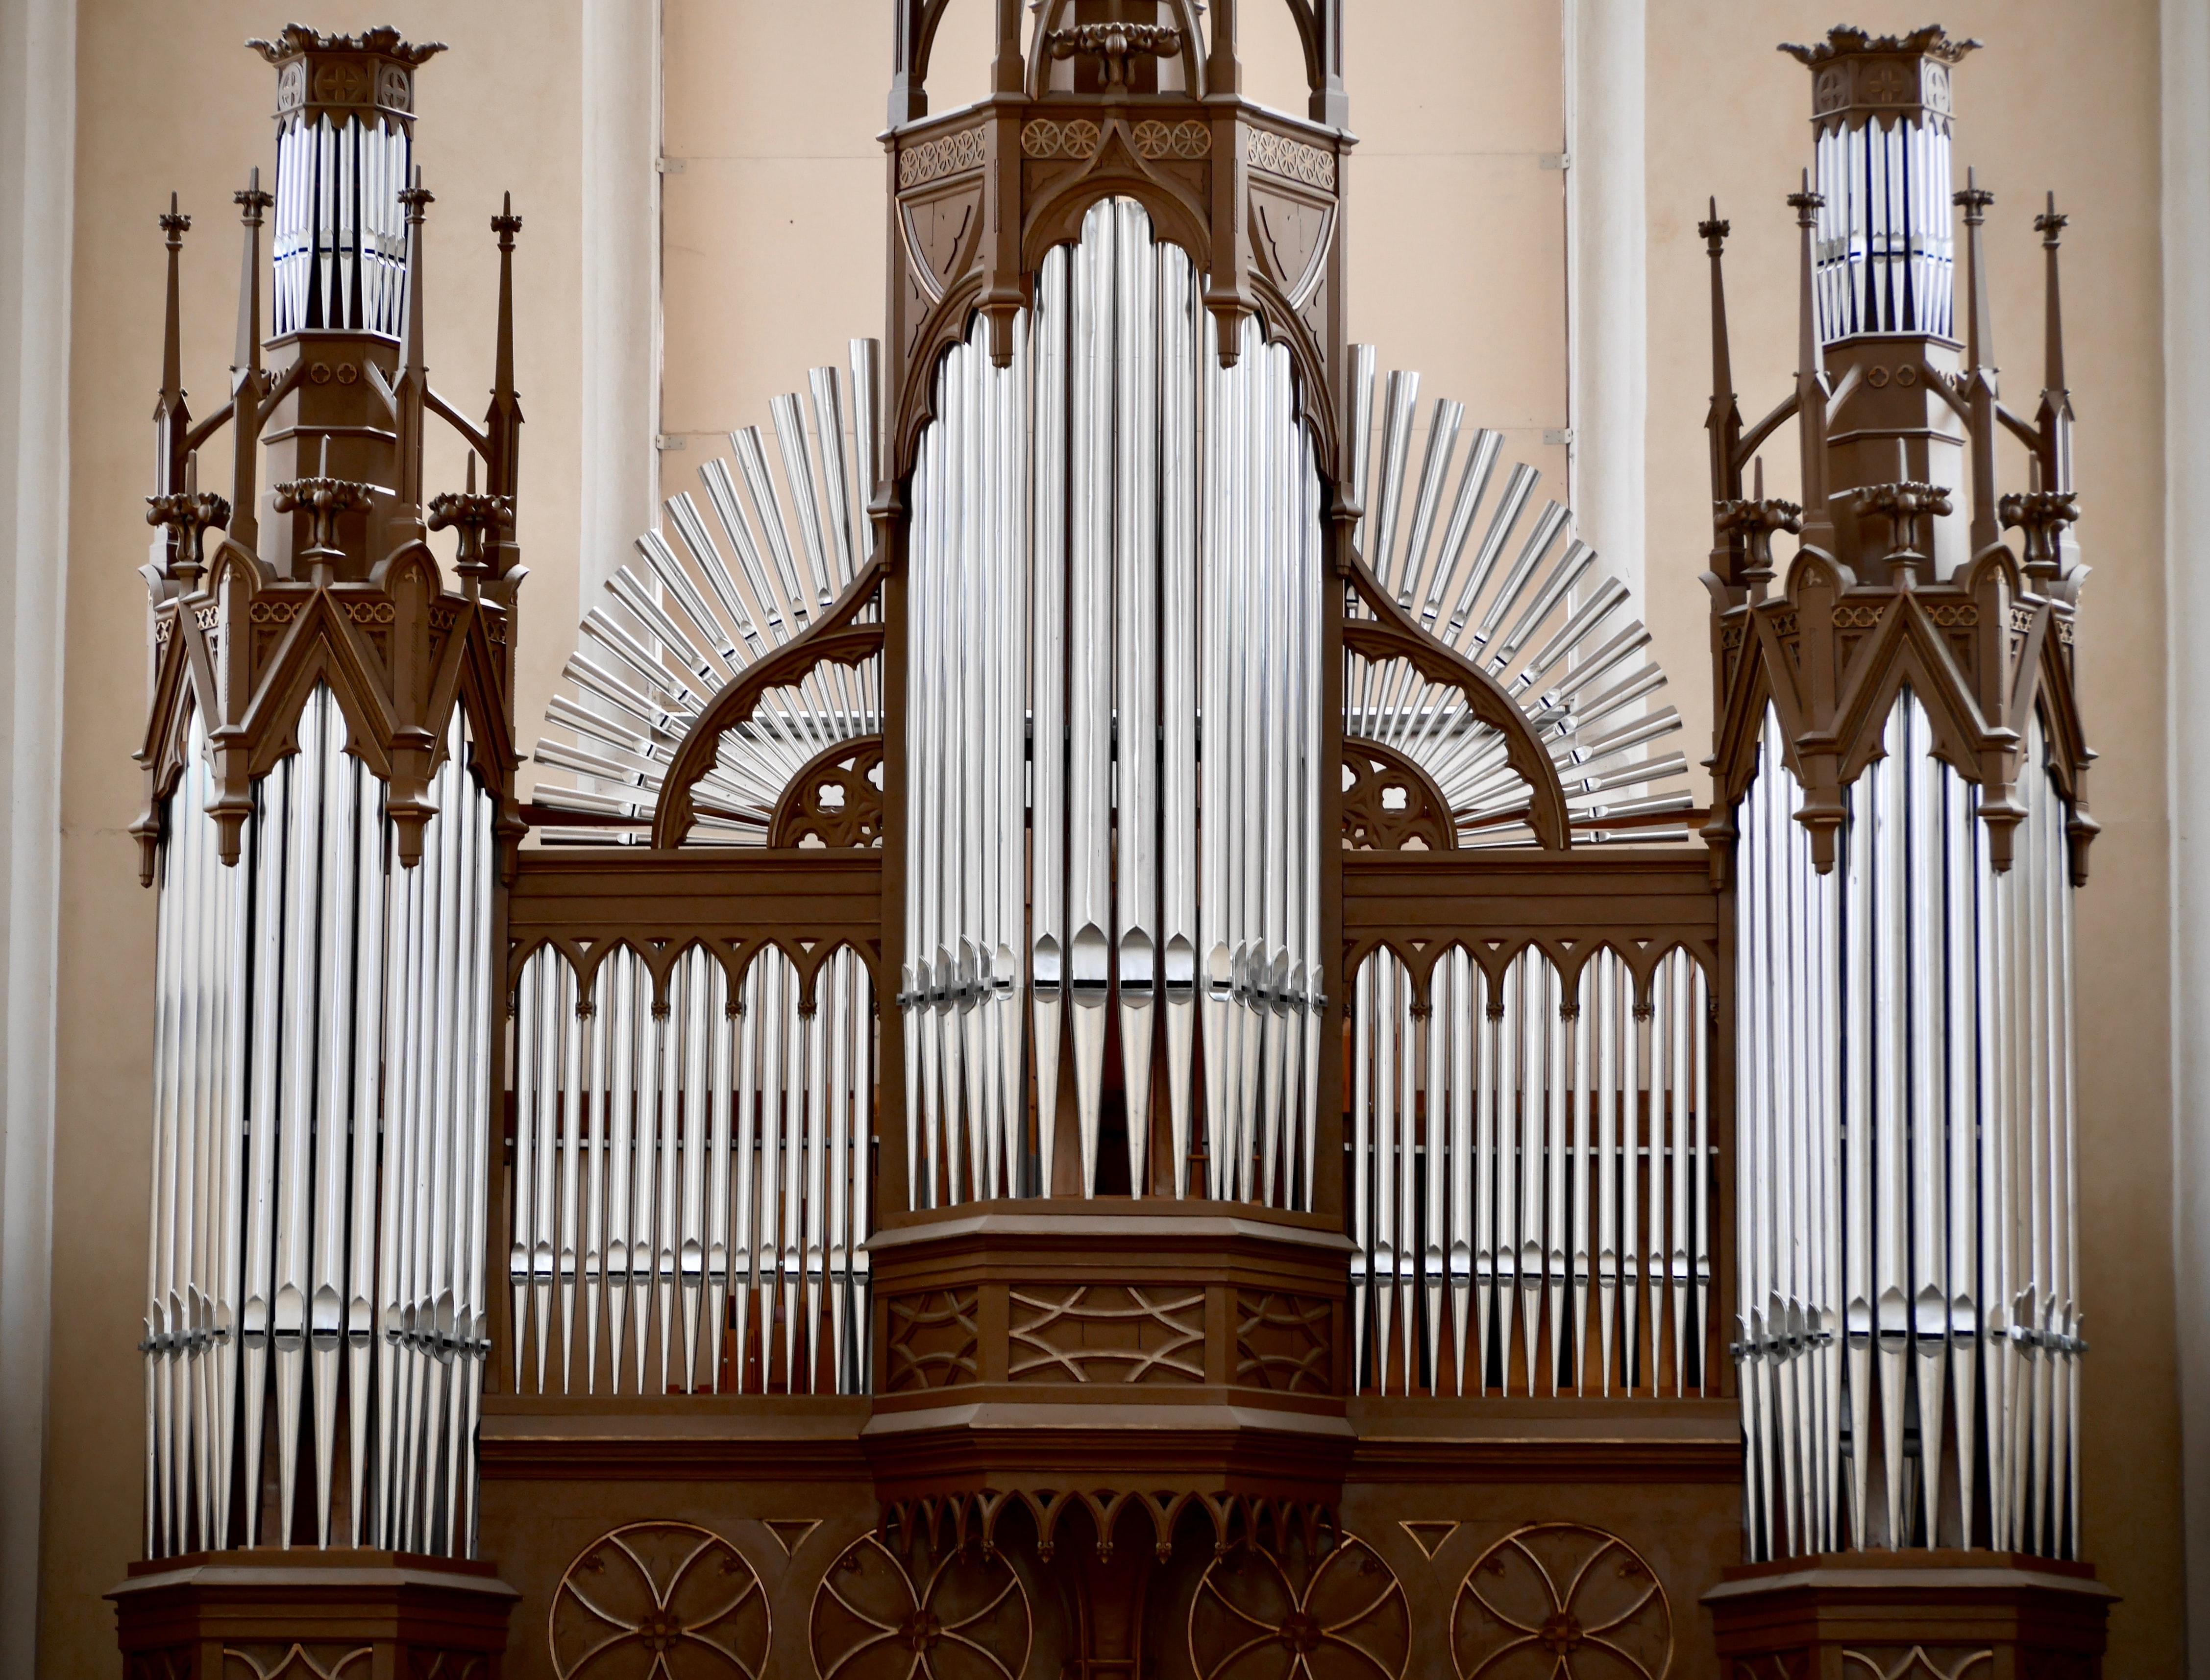 Вокально-органный концерт «Ave Maria через столетия» со скидкой 50%